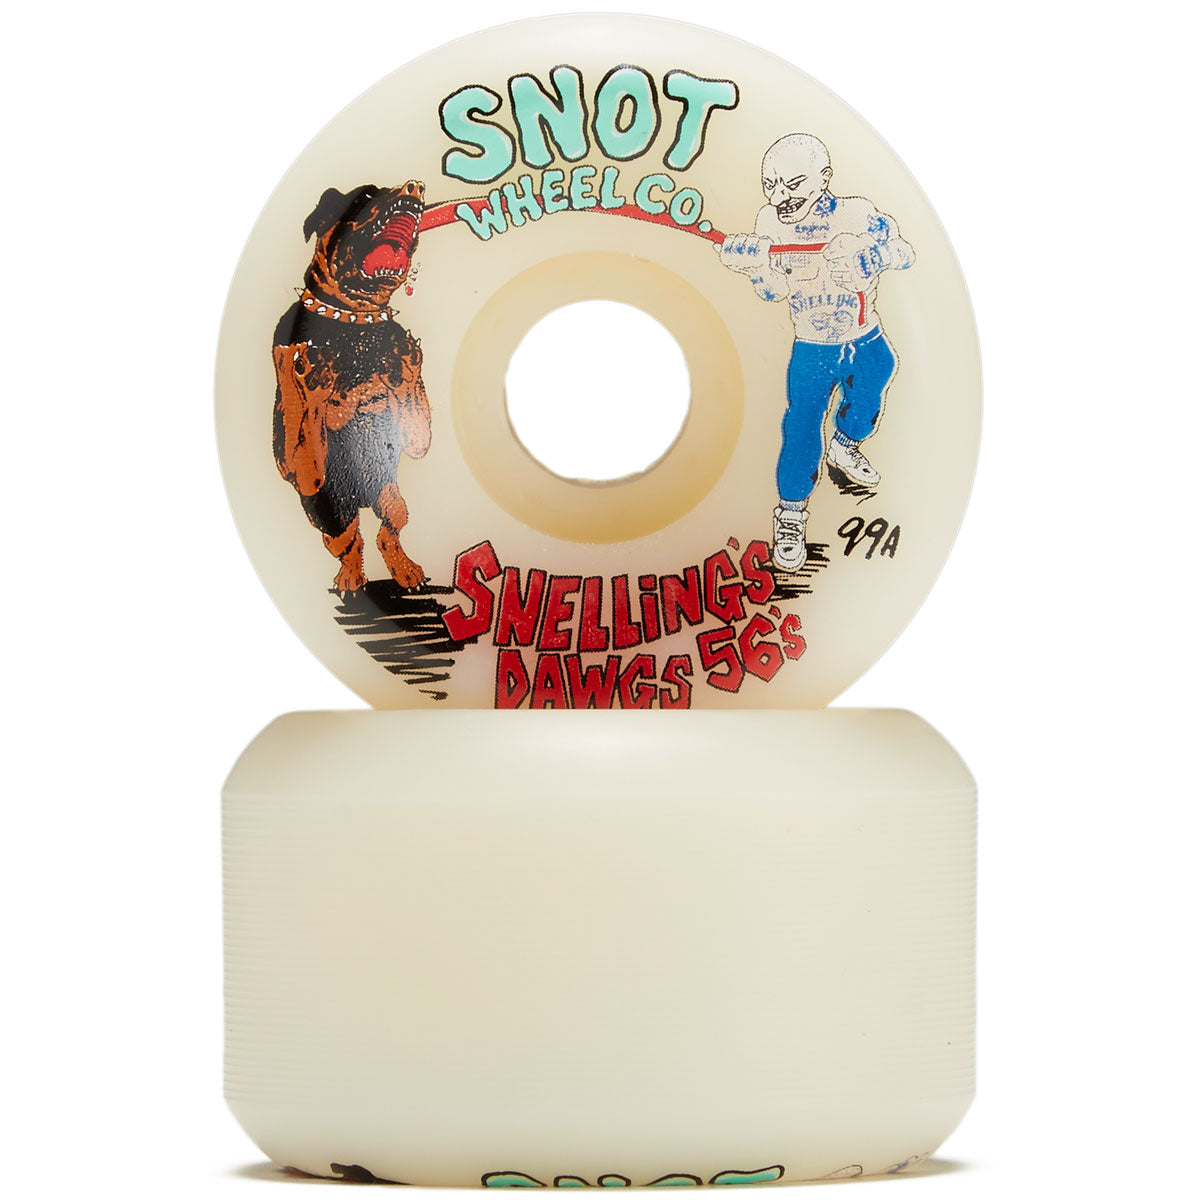 Snot Snellings Dawgs Skateboard Wheels - 56mm image 2